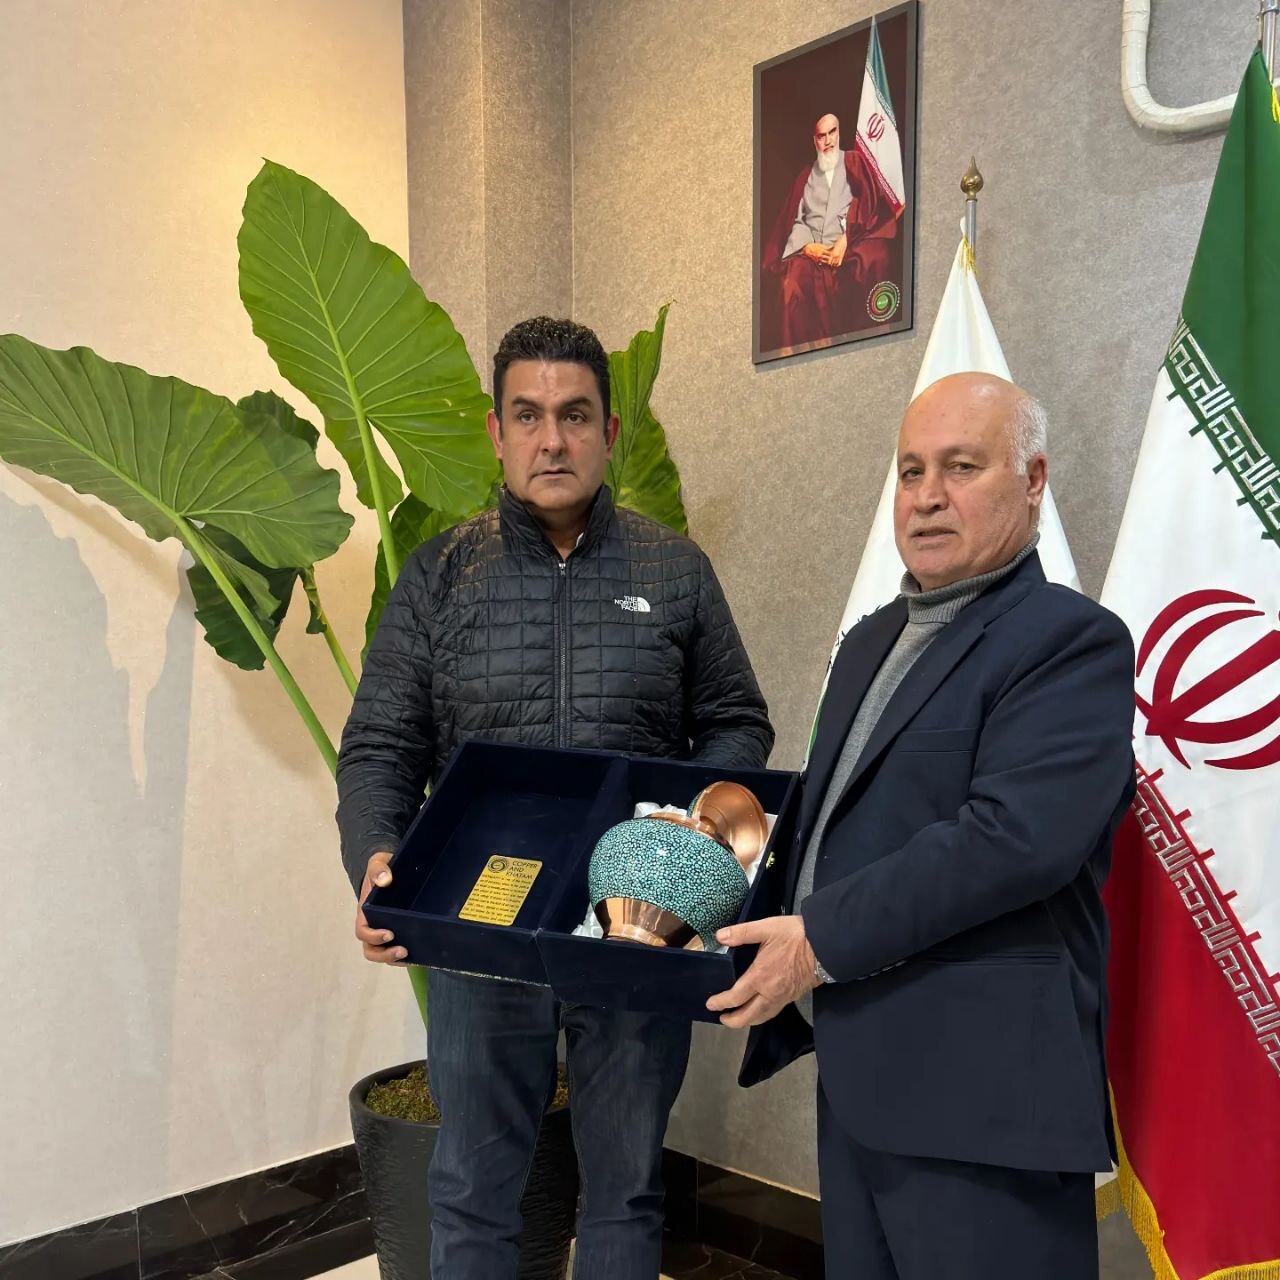 - پایان سفر دو روزه عضو هیأت رییسه فدراسیون جهانی اسکیت و رییس کمیسیون فنی سرعت به ایران